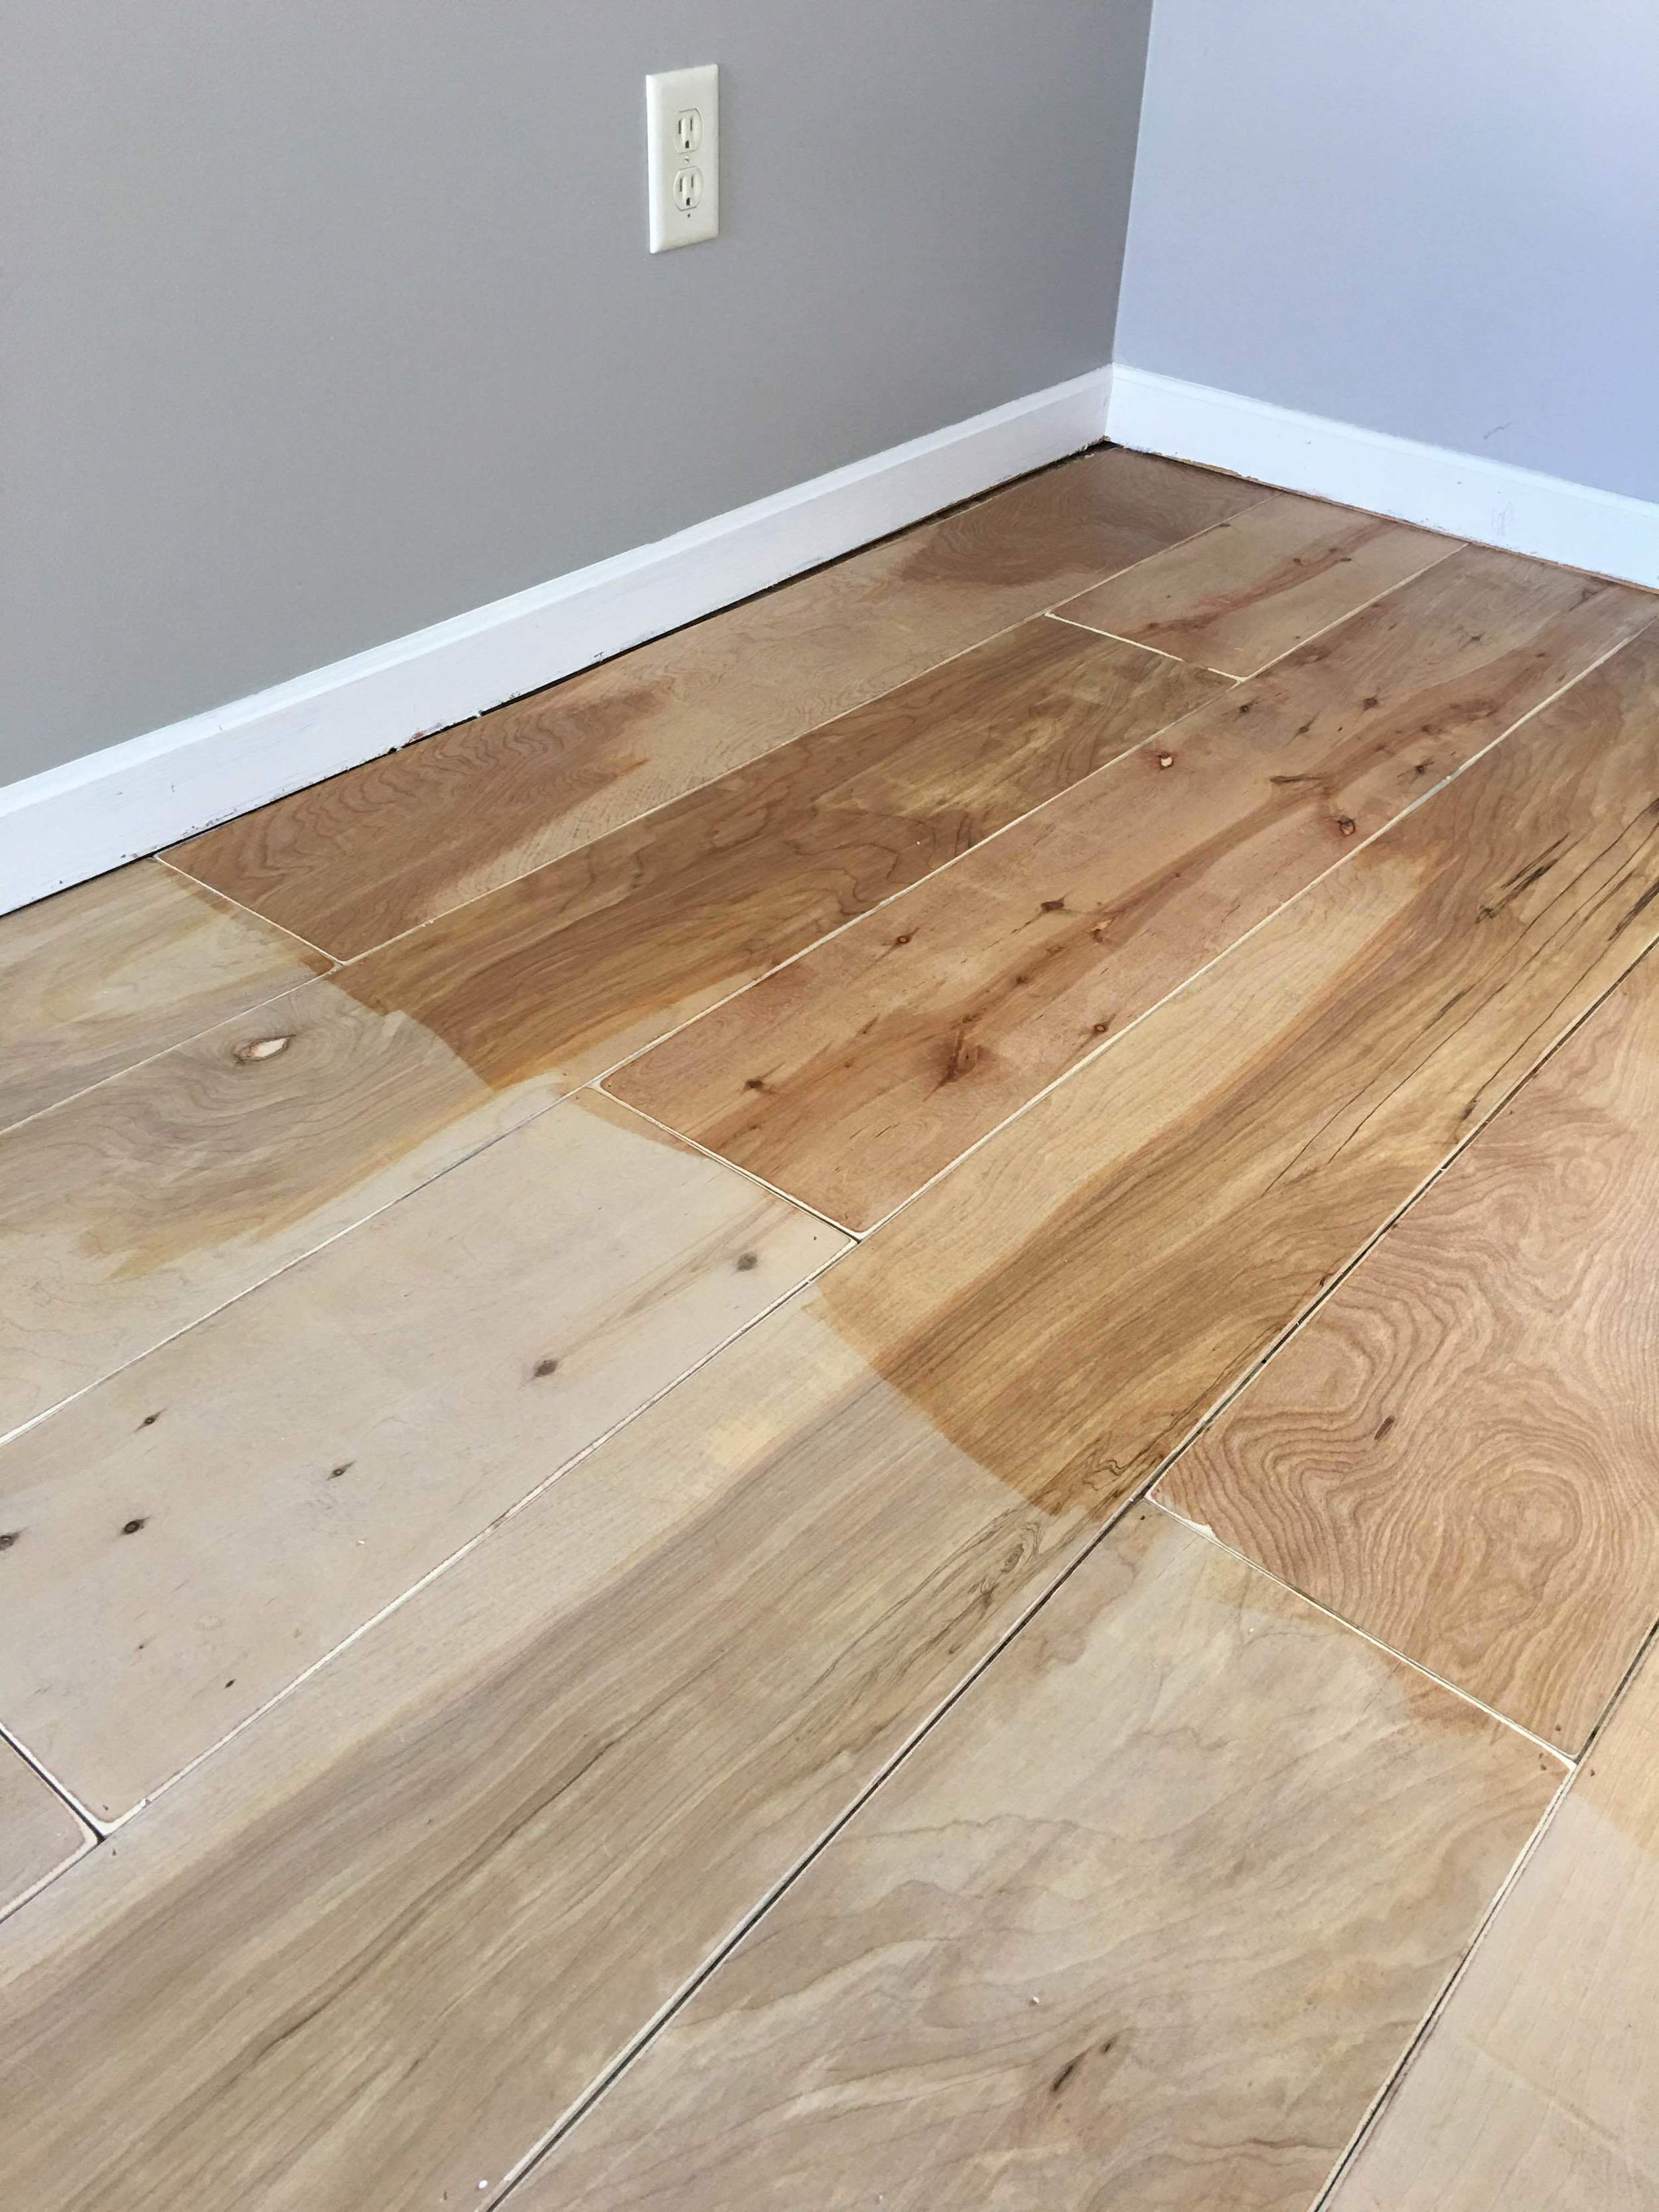 Plywood Turned Hardwood Flooring Diy, How To Make Plywood Look Like Hardwood Floors